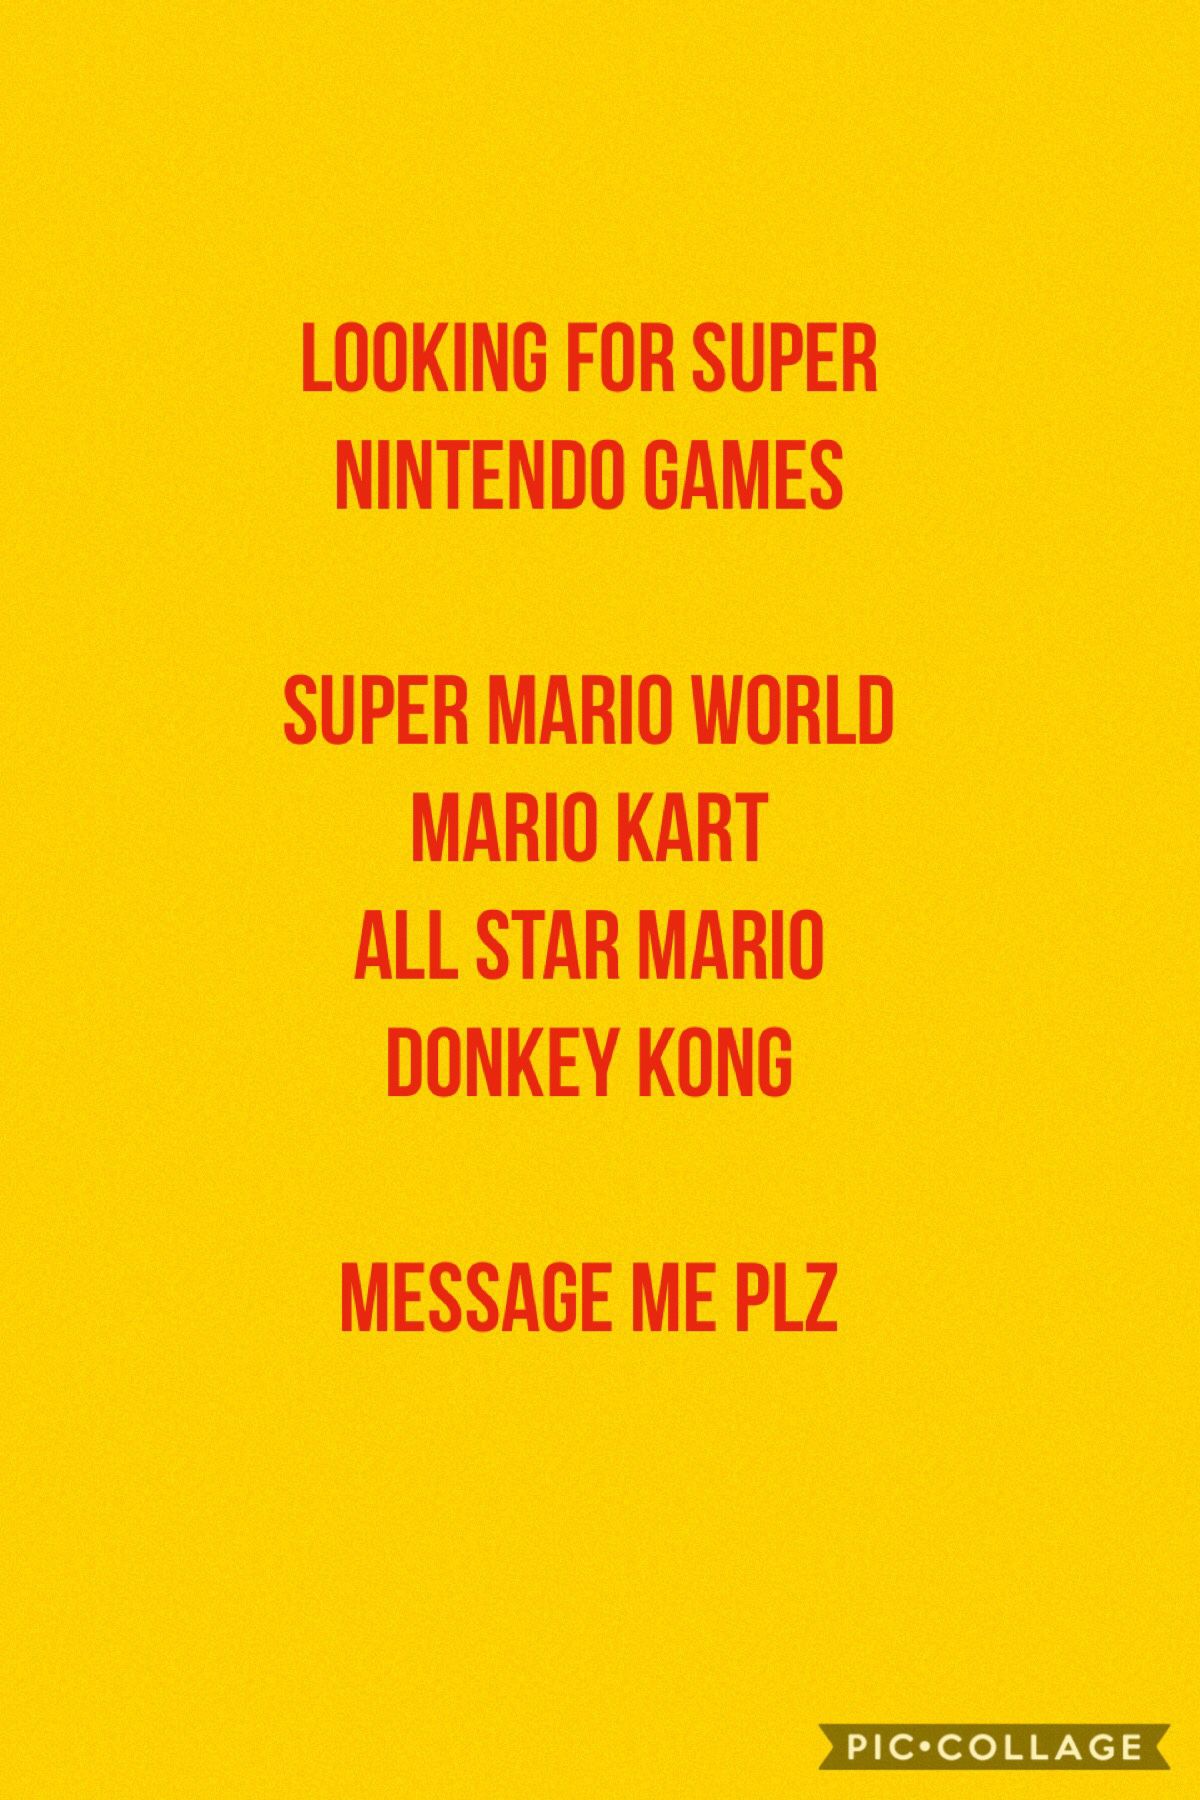 Super Nintendo games